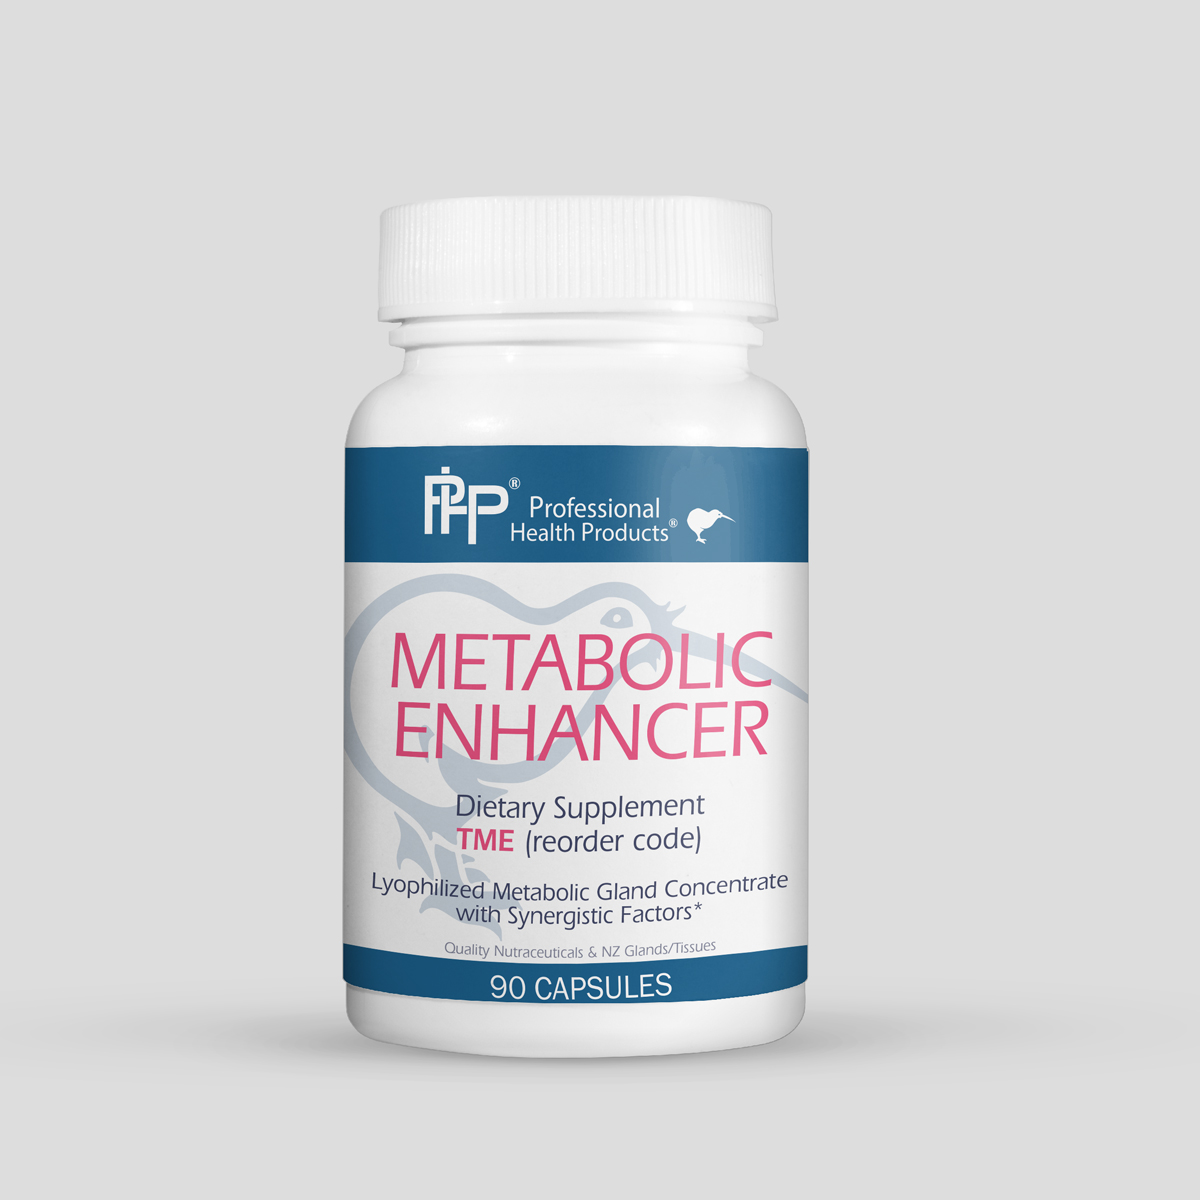 Metabolic enhancer for endurance